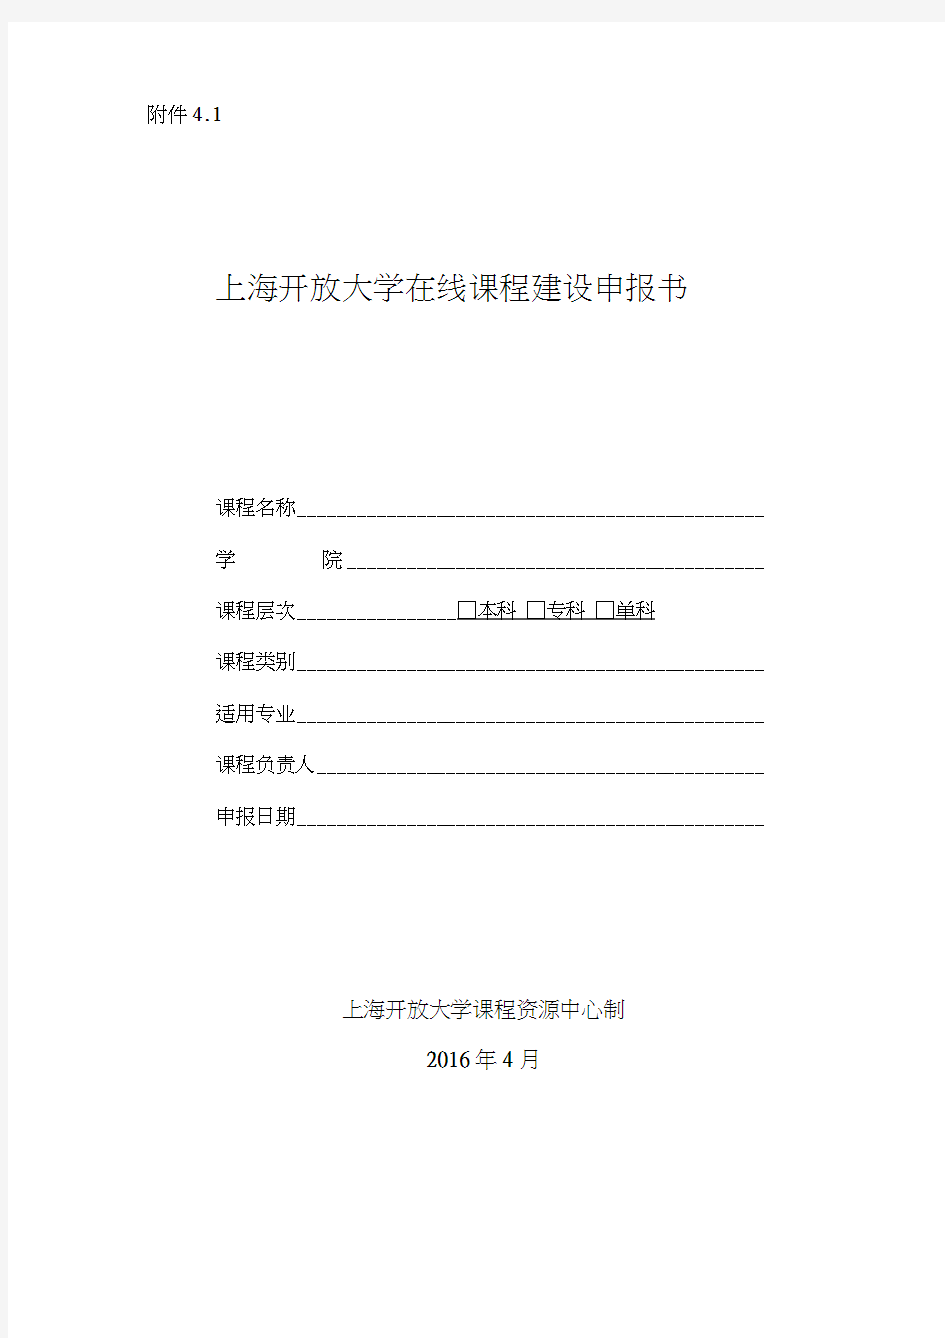 (完整版)在线课程建设申报书-上海开大课程资源管理系统-上海开放大学